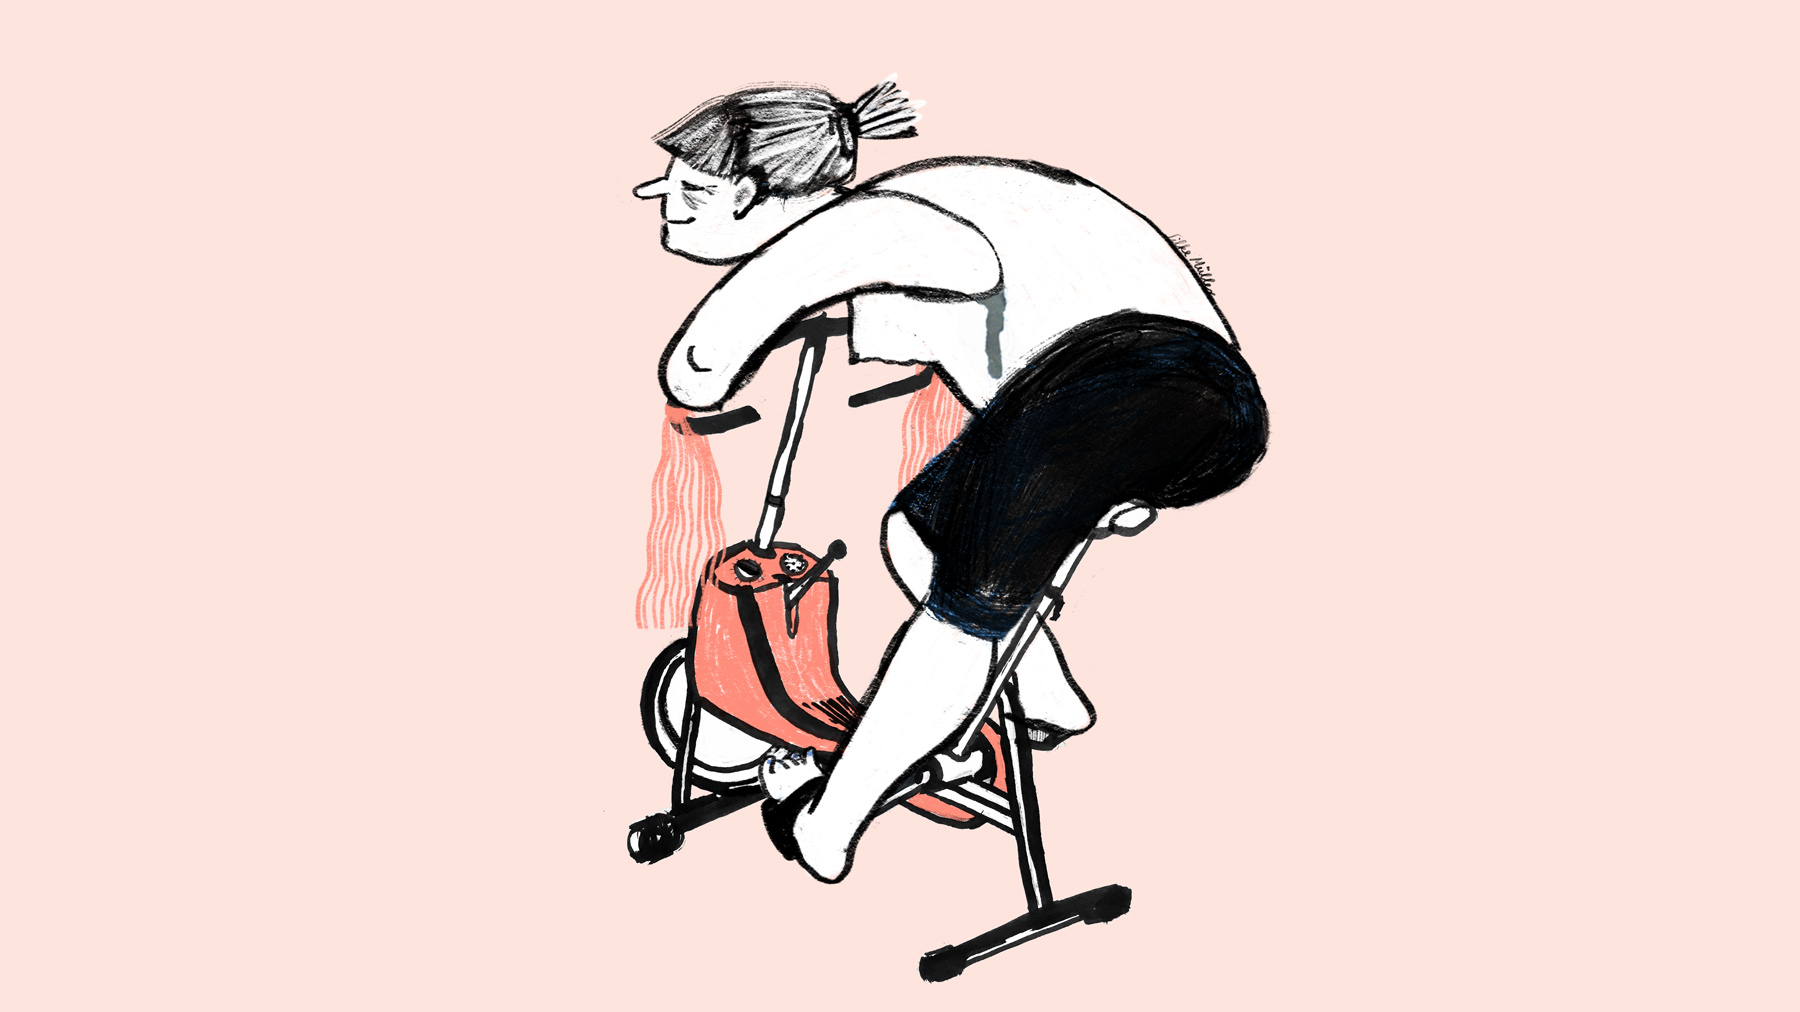 Corona Tagebuch, Comic über homeoffice, die Illustration zeit eine Frau die auf ihrem Hometrainer/ergometer zur "Arbeit Fährt"